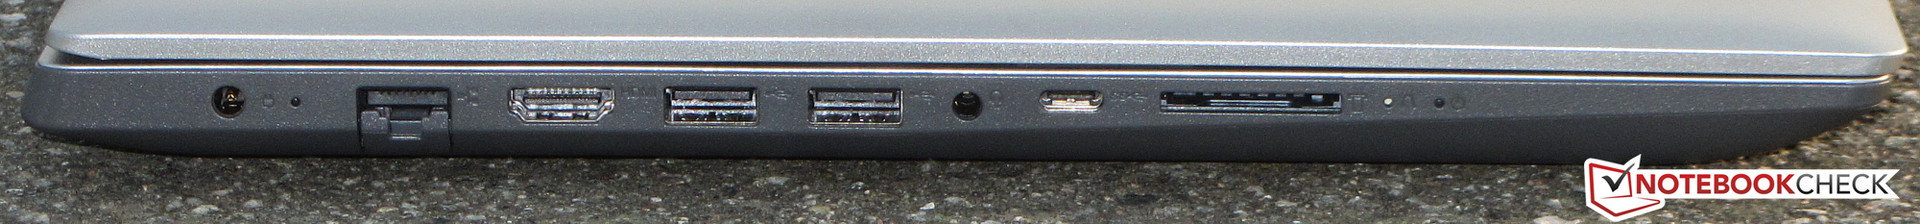 Lenovo IdeaPad 320-15IKB (7200U, 940MX, FHD) Laptop Review 